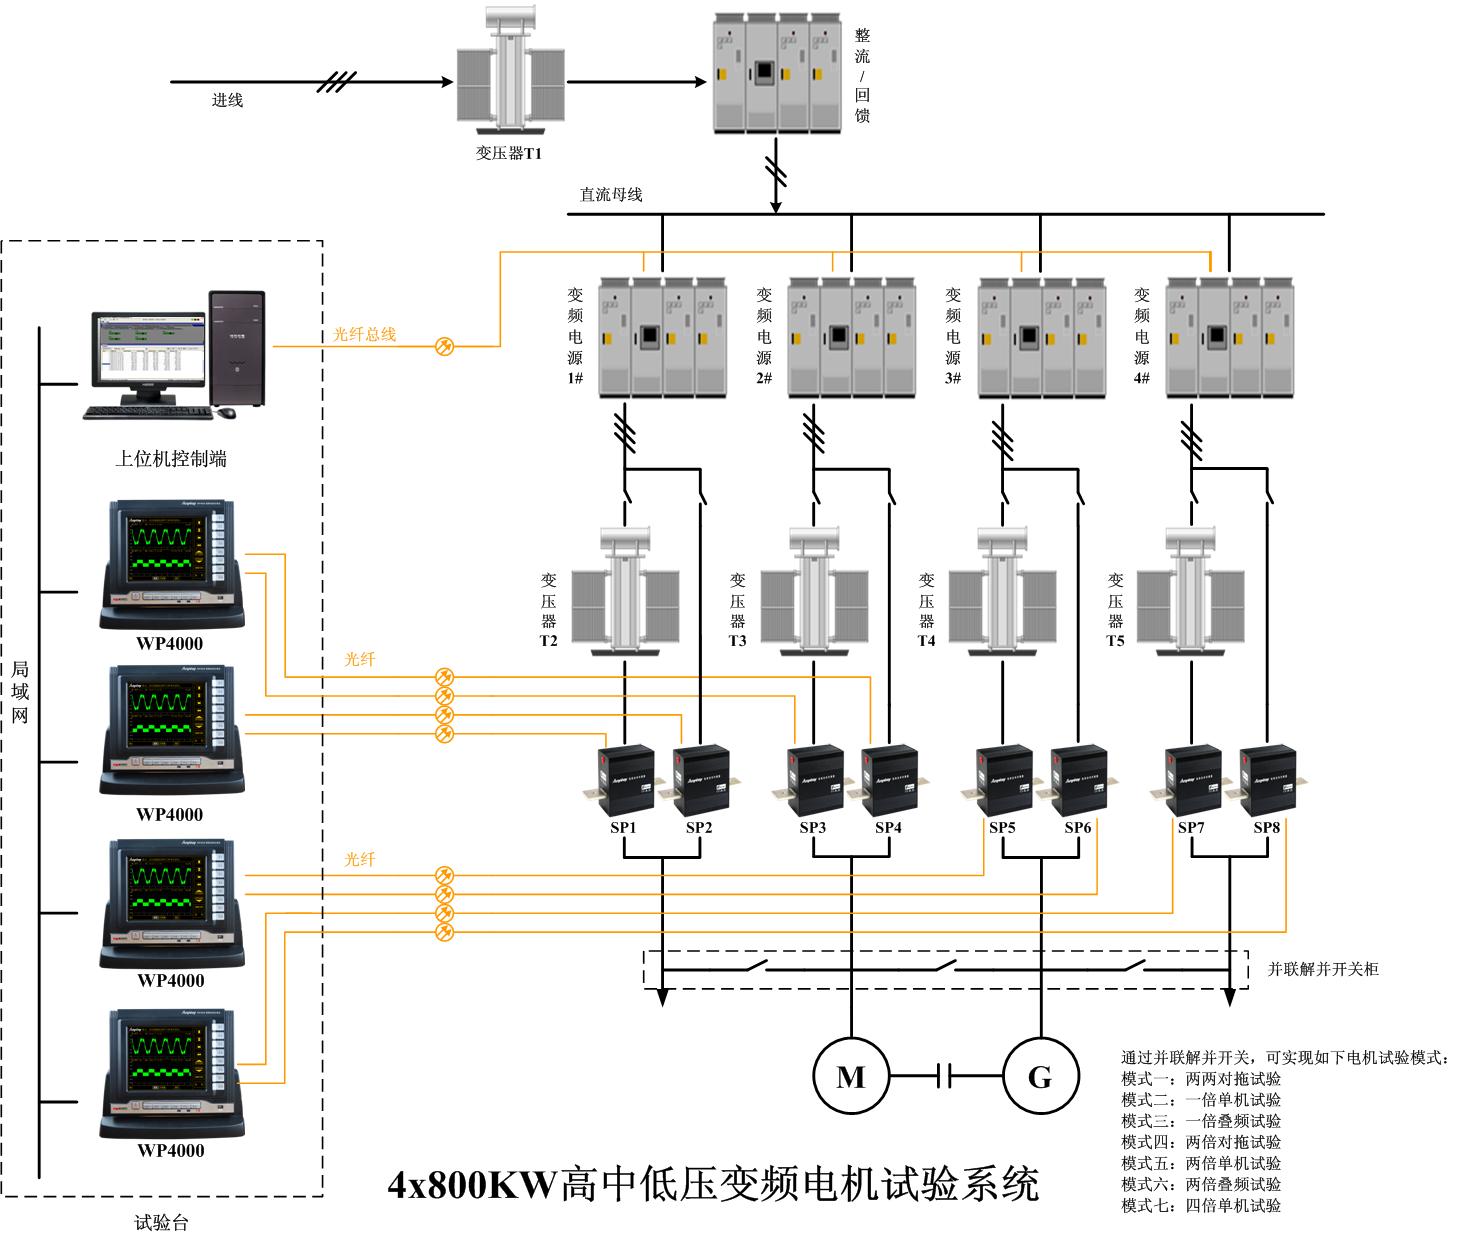 4x800KW高中低压变频电机试验系统